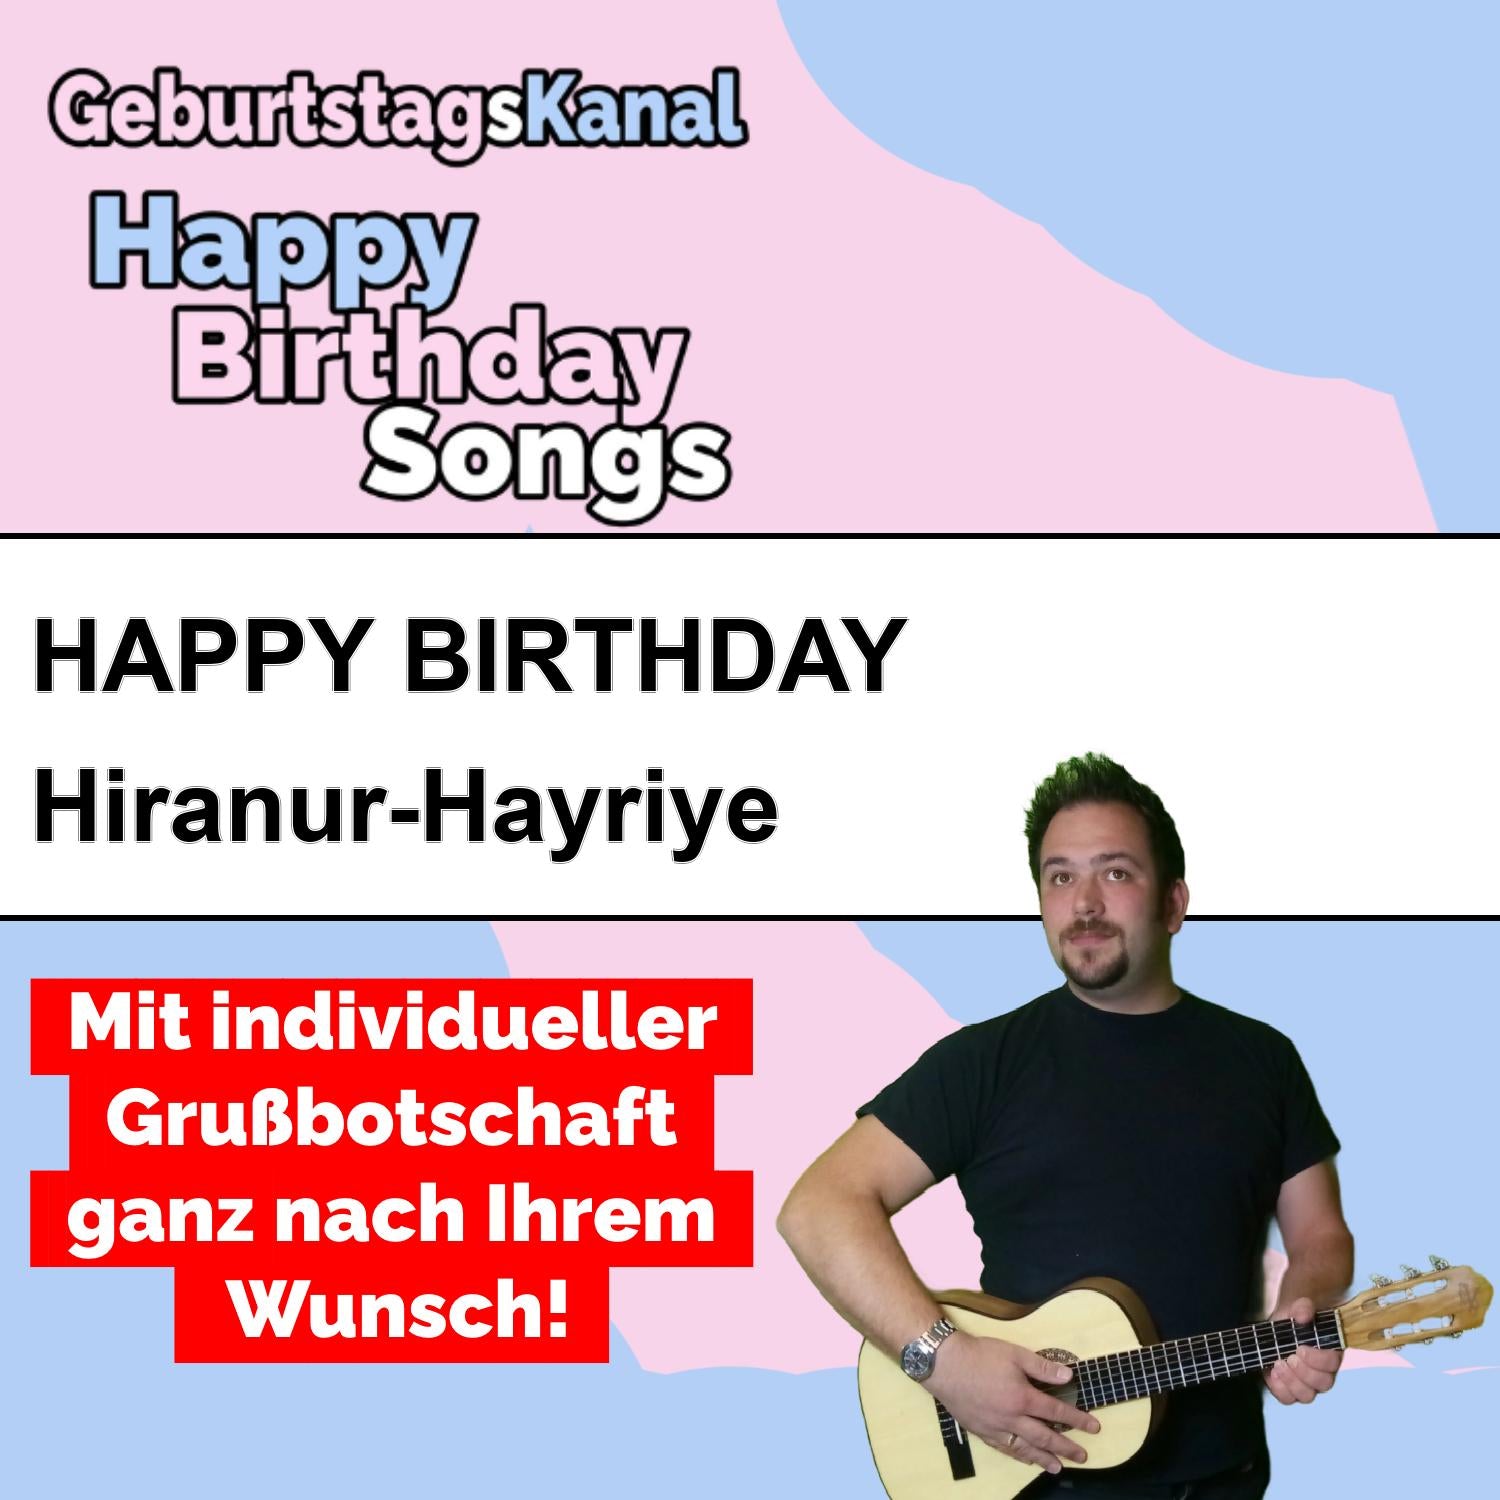 Produktbild Happy Birthday to you Hiranur-Hayriye mit Wunschgrußbotschaft